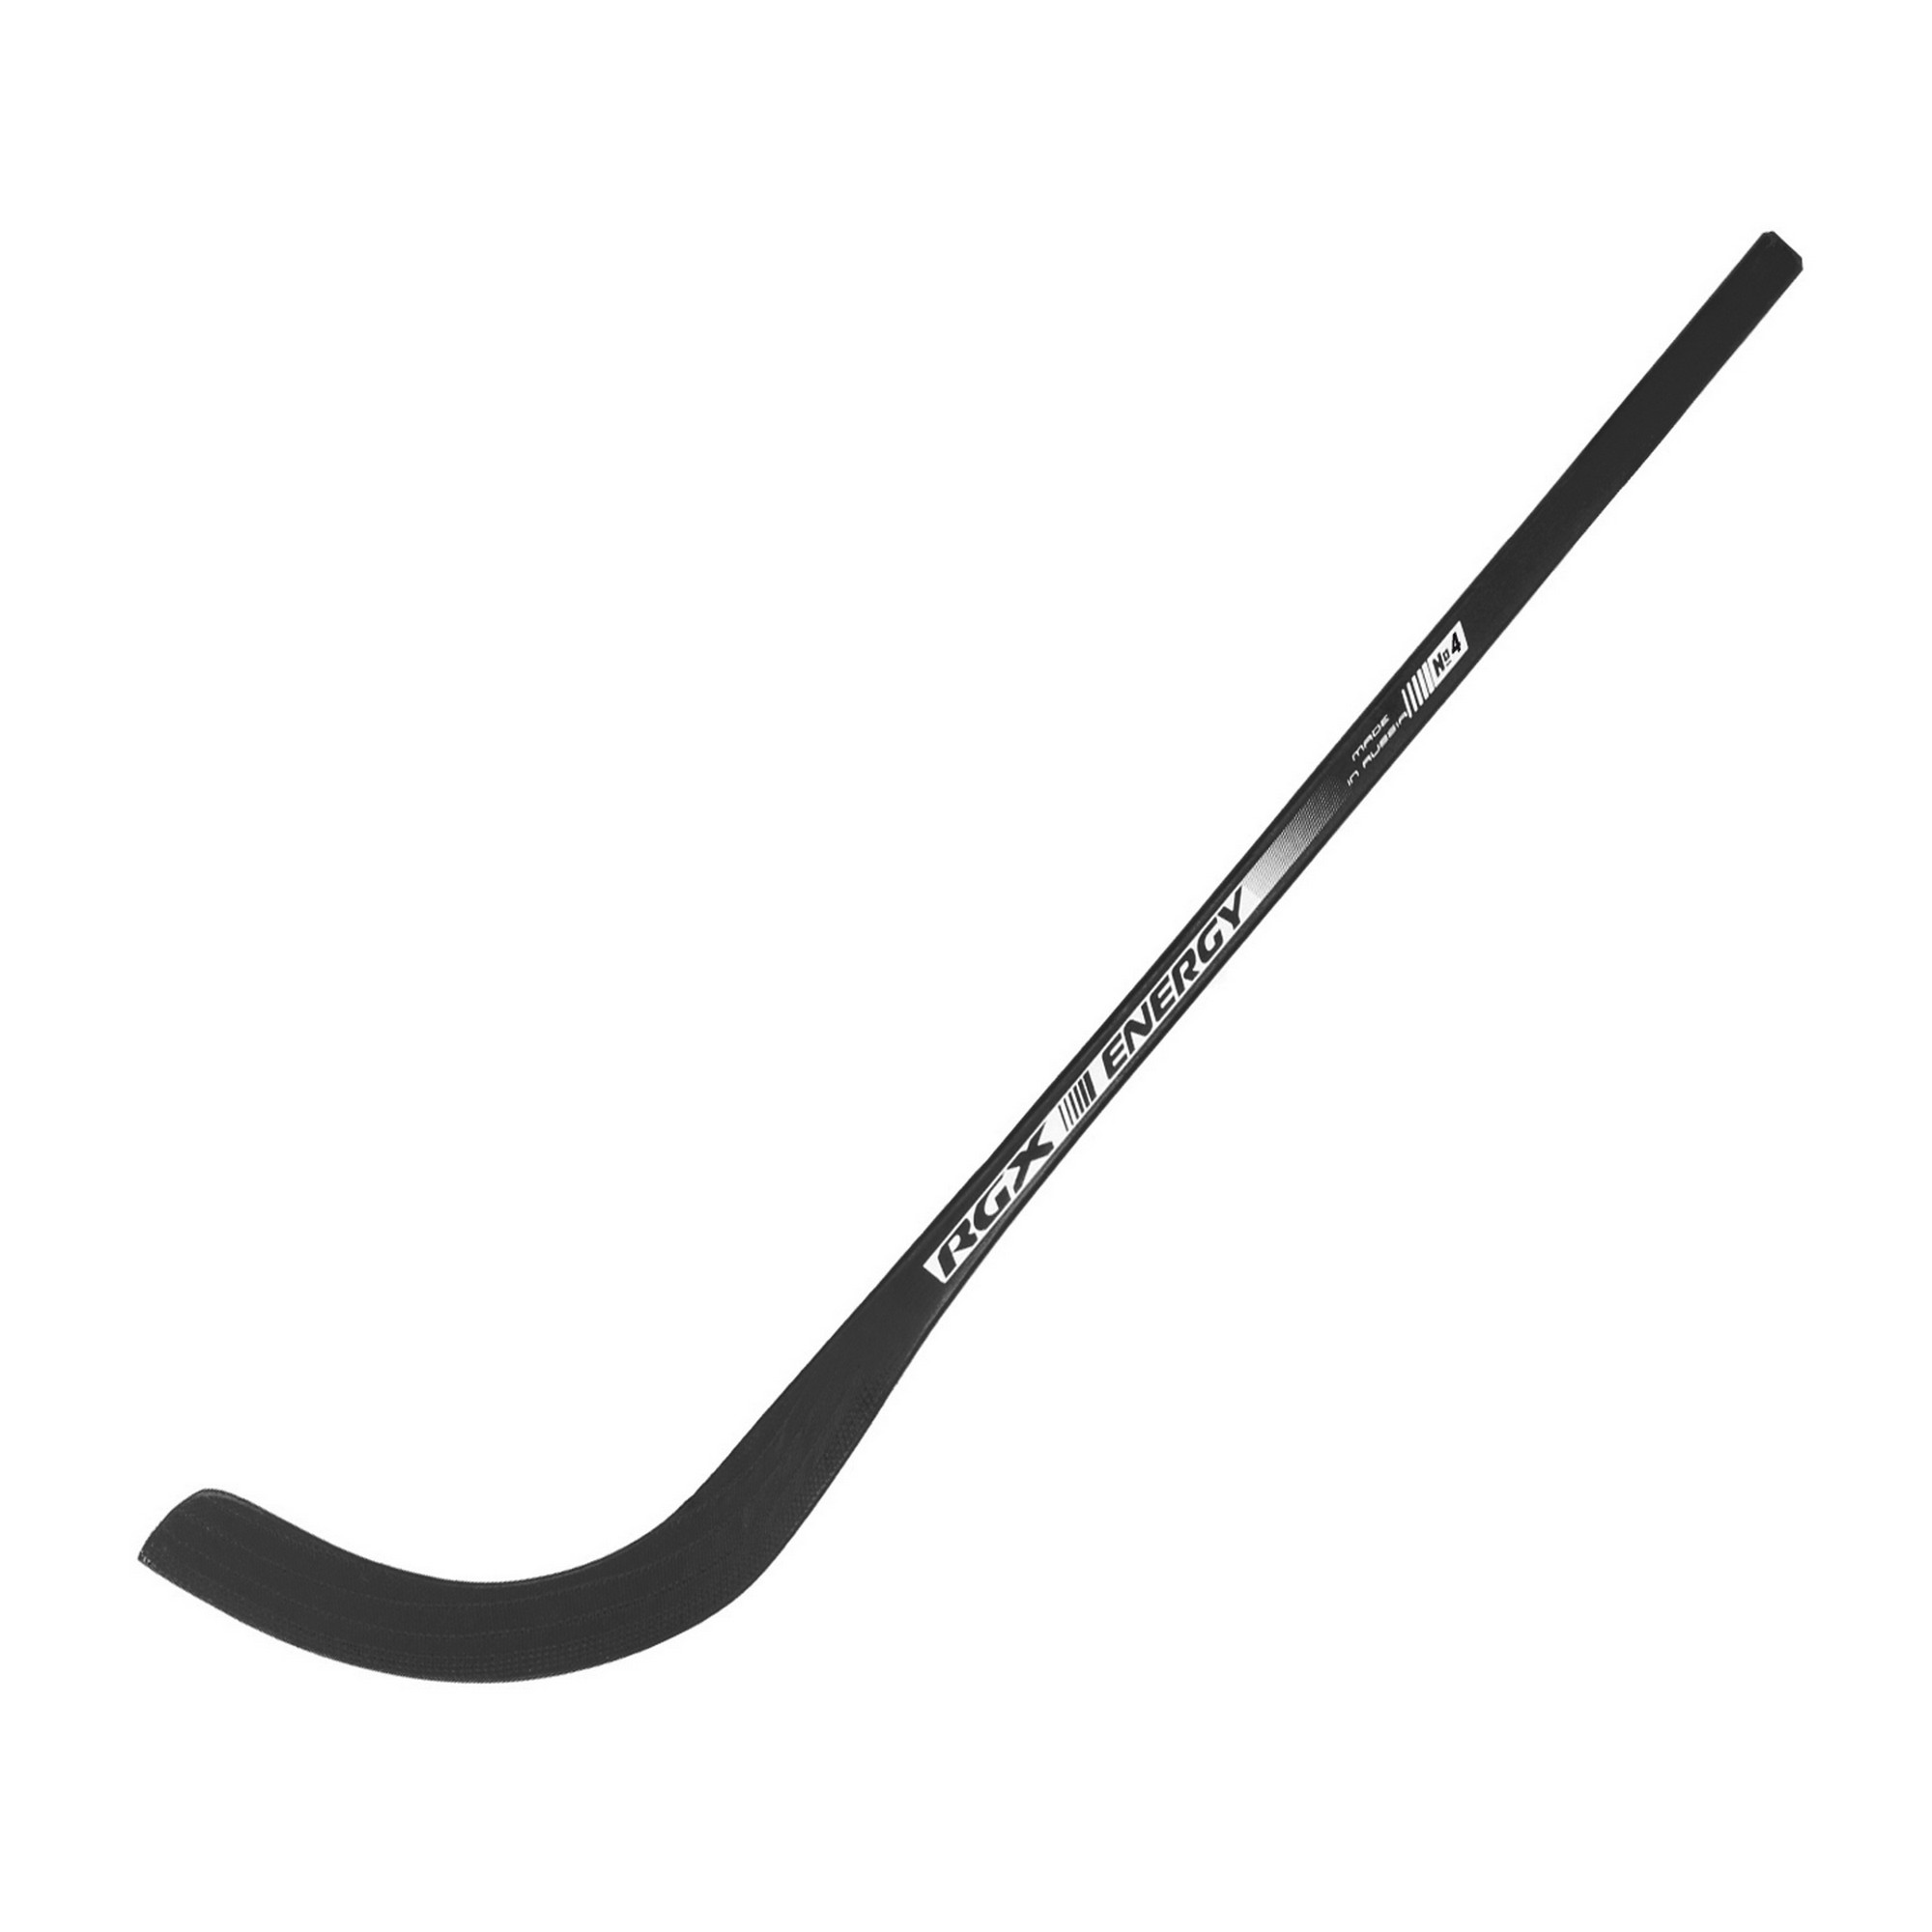 Клюшка для хоккея с мячoм RGX Energy 4 black (Продается только по 10шт.) 2000_2000